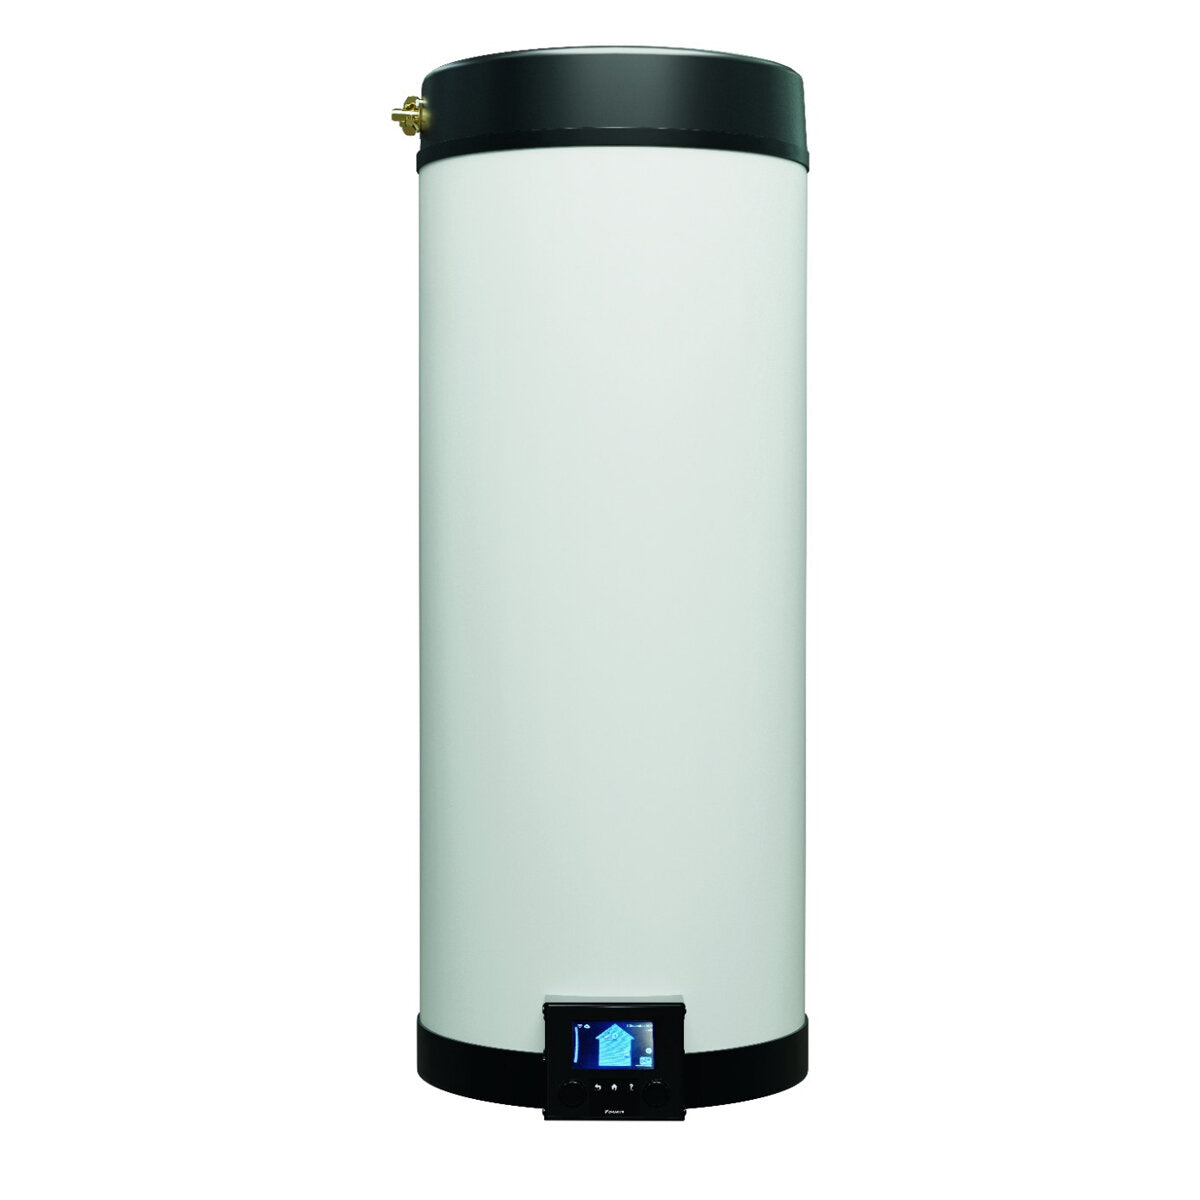 Système de climatisation et d'eau chaude sanitaire double split Daikin Multi+ - Emura 3 unités intérieures blanches 12000+12000 BTU - Réservoir 90 l